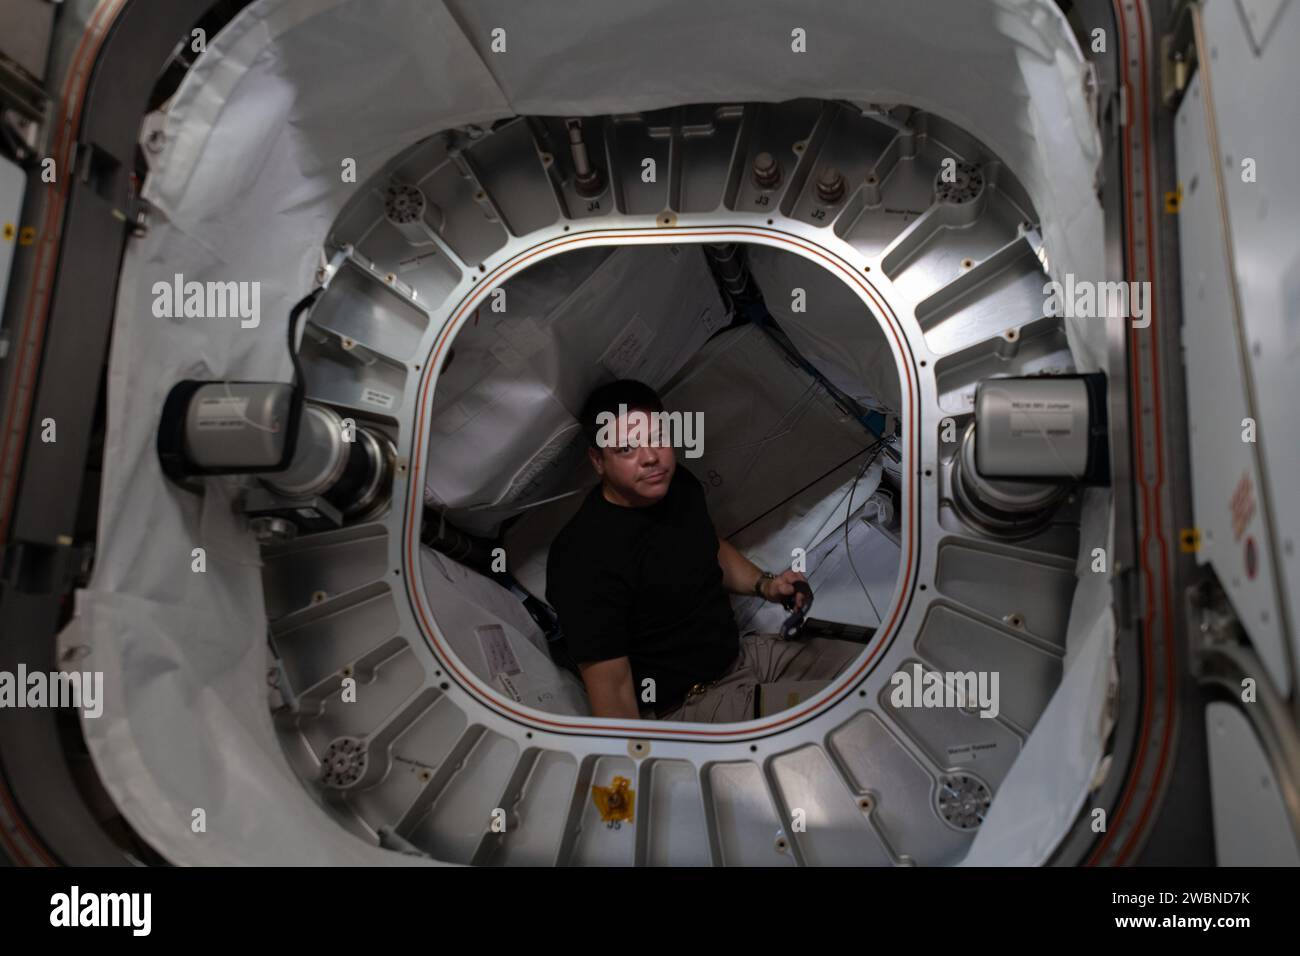 Iss063e028479 (1 juillet 2020) --- Bob Behnken, astronaute de la NASA et ingénieur de vol d'Expedition 63, est photographié à l'intérieur du module aérospatial extensible Bigelow (BEAM) pendant les opérations de récupération des filtres à charbon. Banque D'Images